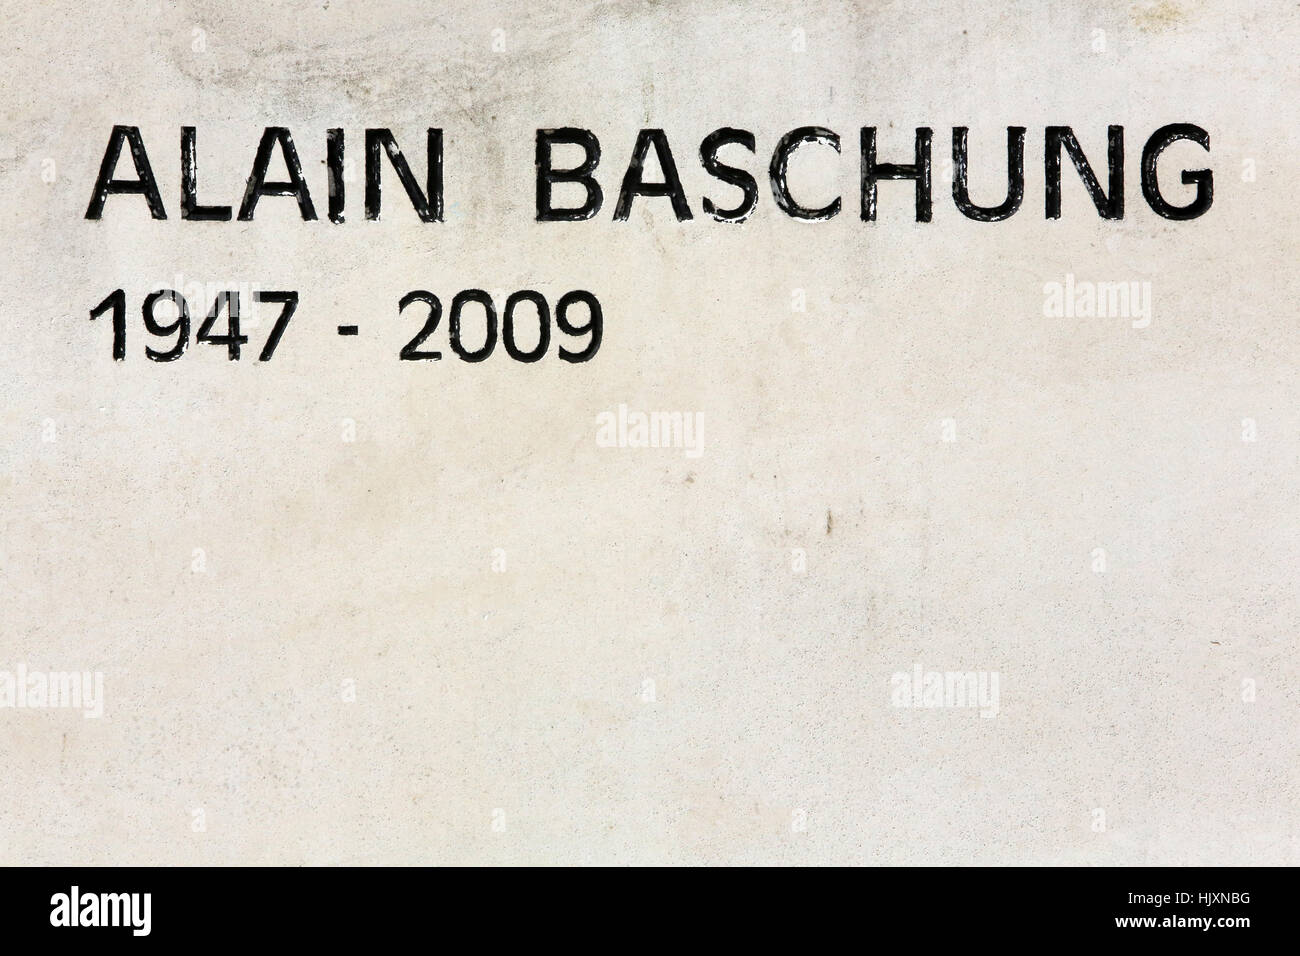 Alain Bashung. 1947-2009. Stock Photo